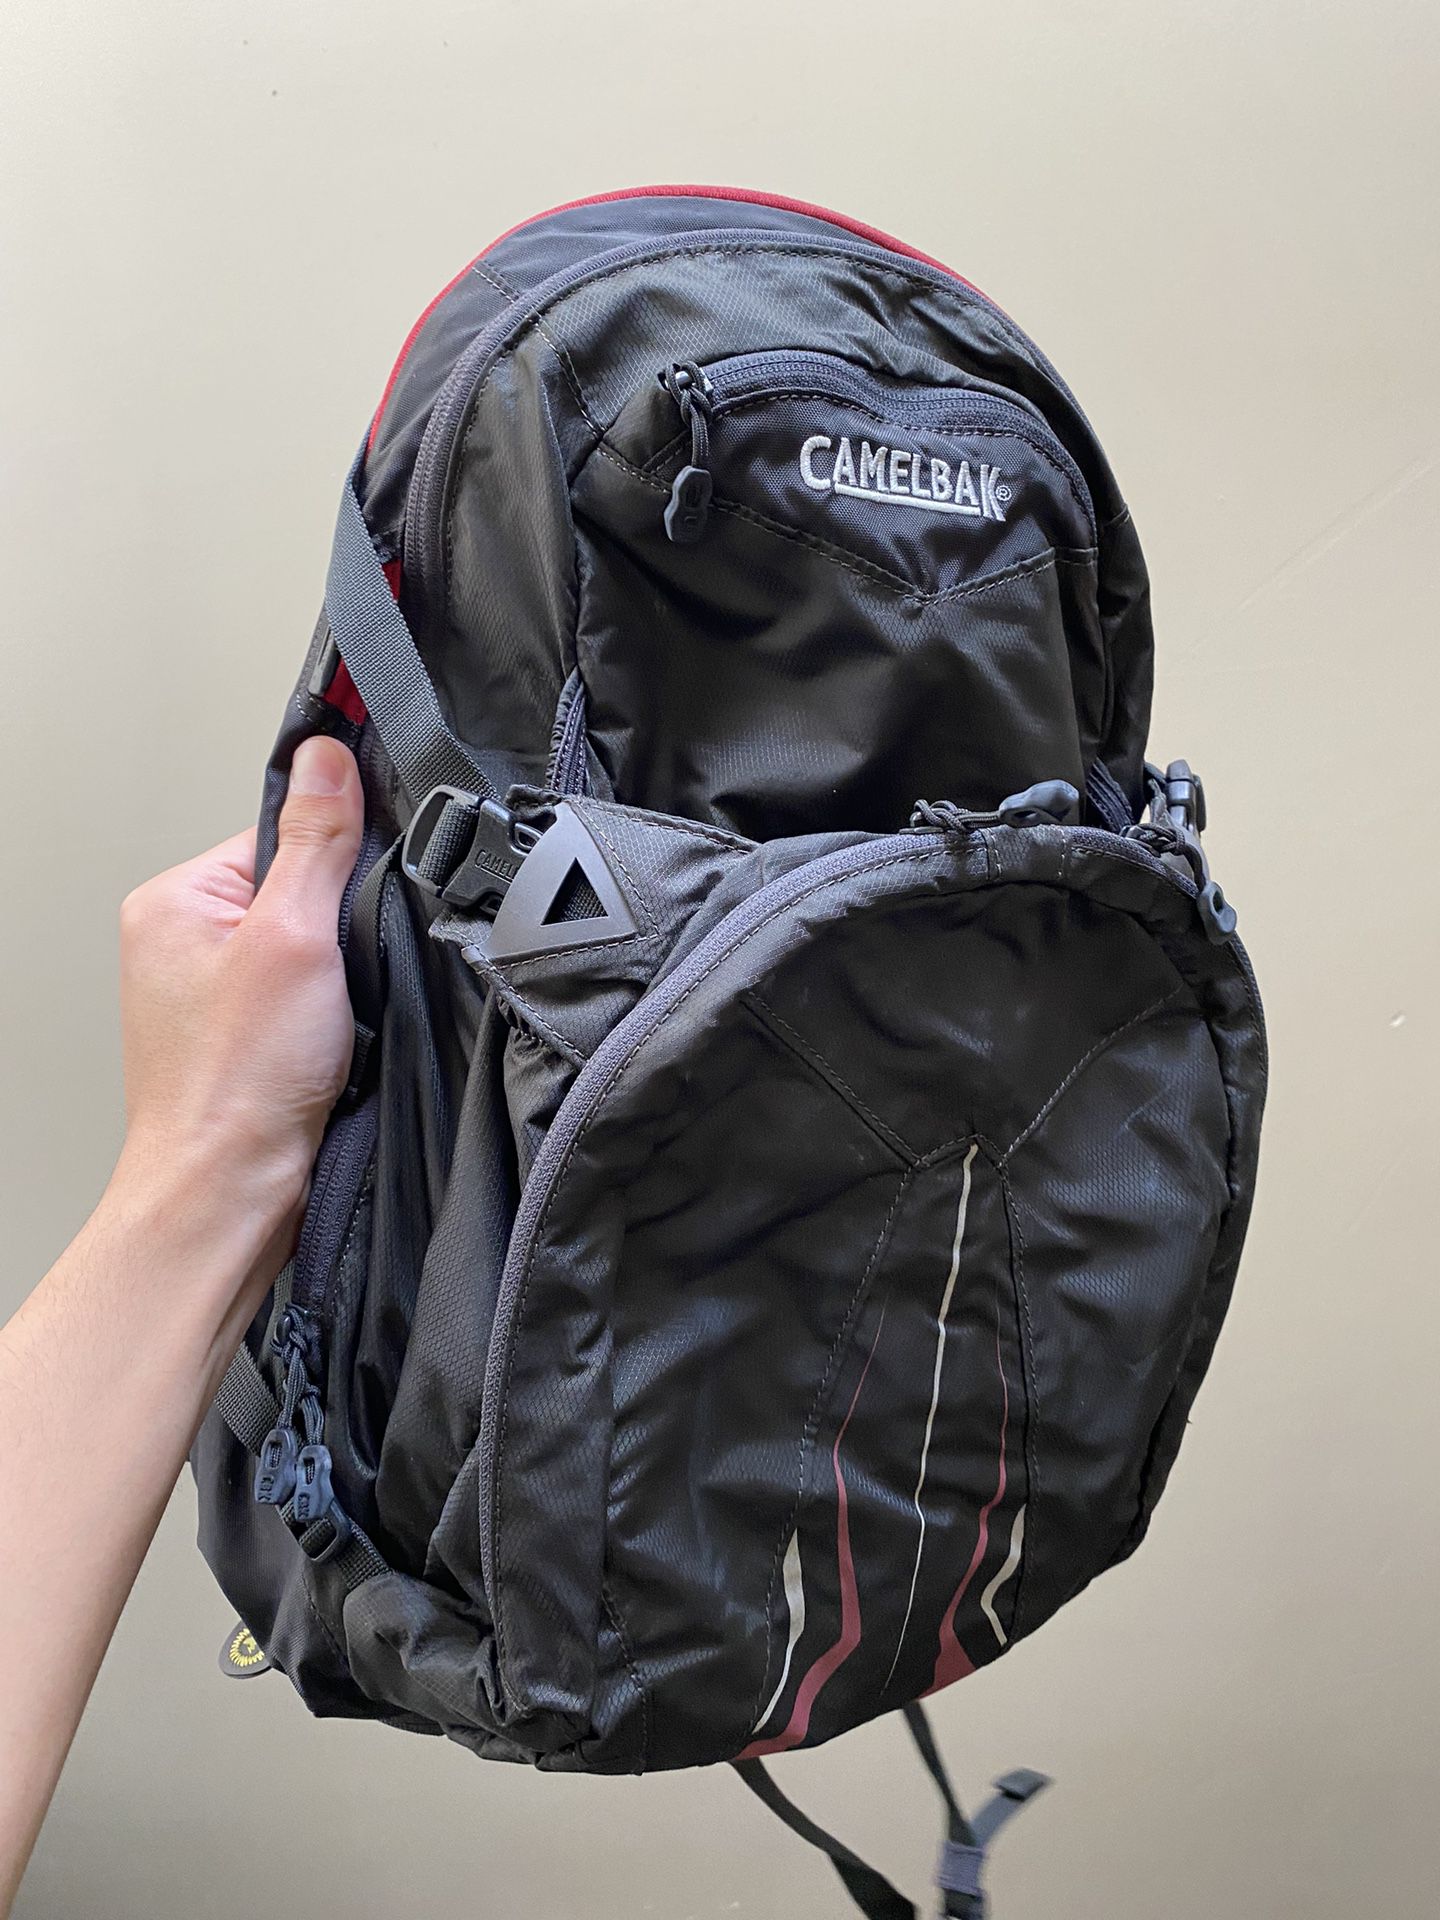 Camelbak backpack 